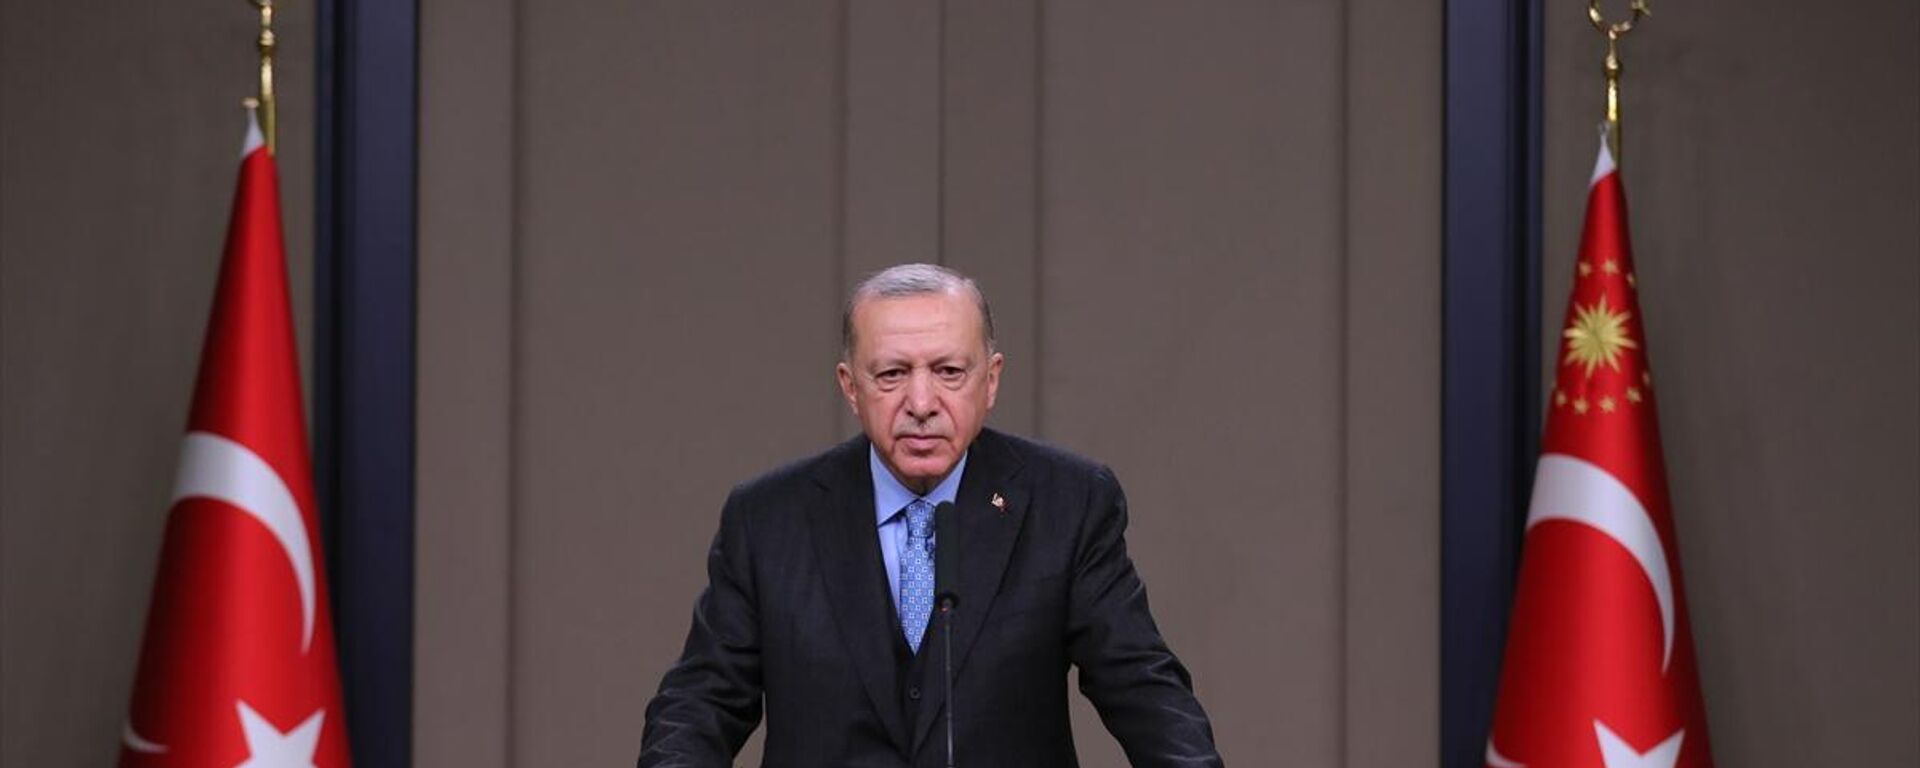 Cumhurbaşkanı Recep Tayyip Erdoğan, Ukrayna ziyareti öncesinde basın toplantısı düzenledi. - Sputnik Türkiye, 1920, 11.02.2022